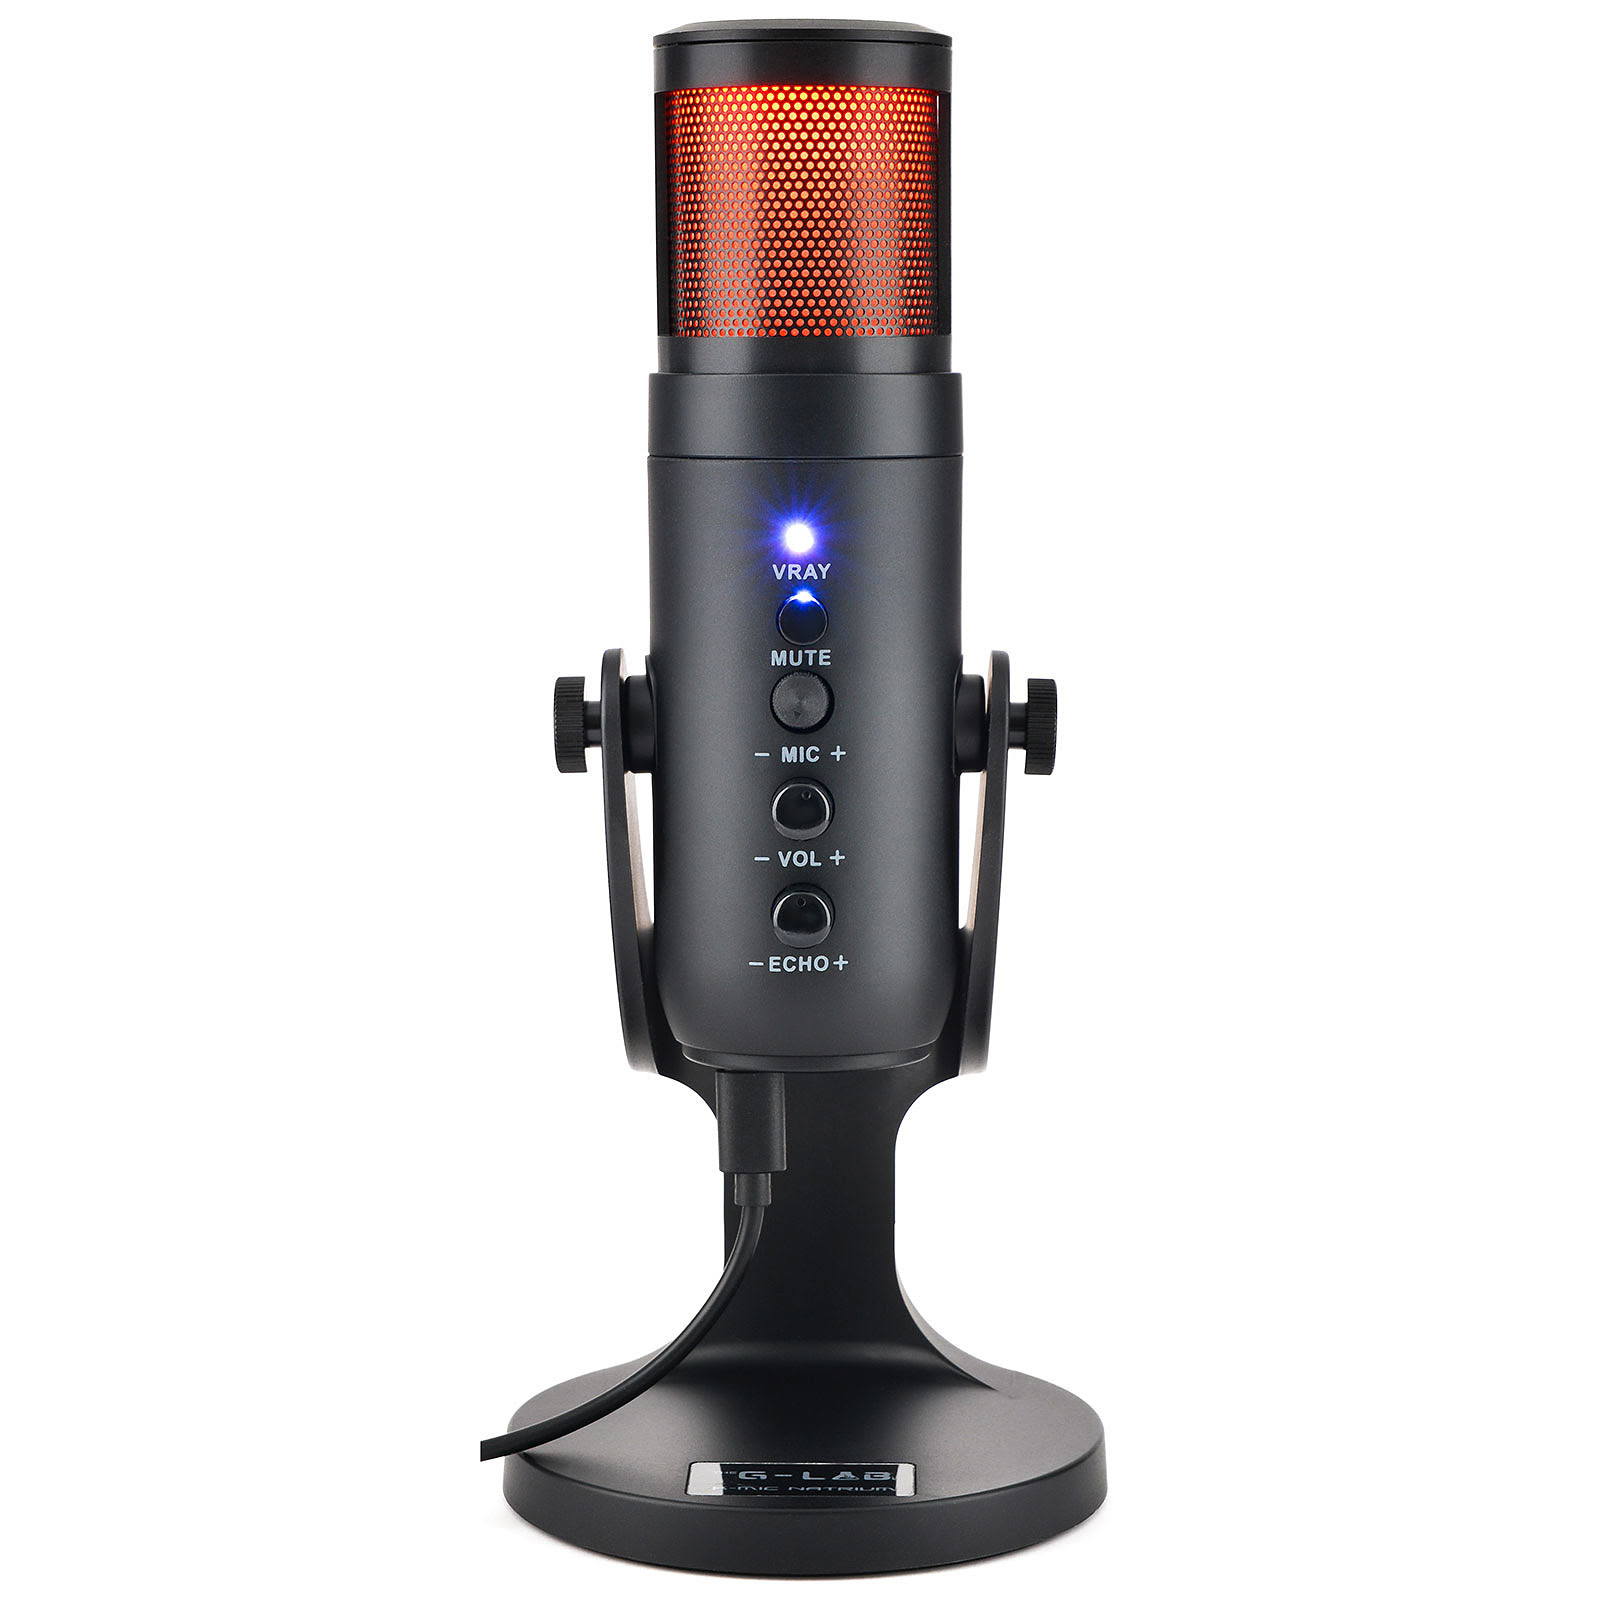 The G-LAB Microphone RGB - K-MIC-NATRIUM (K-MIC-NATRIUM) - Achat / Vente Accessoire Streaming / Vlogging  sur Cybertek.fr - 1